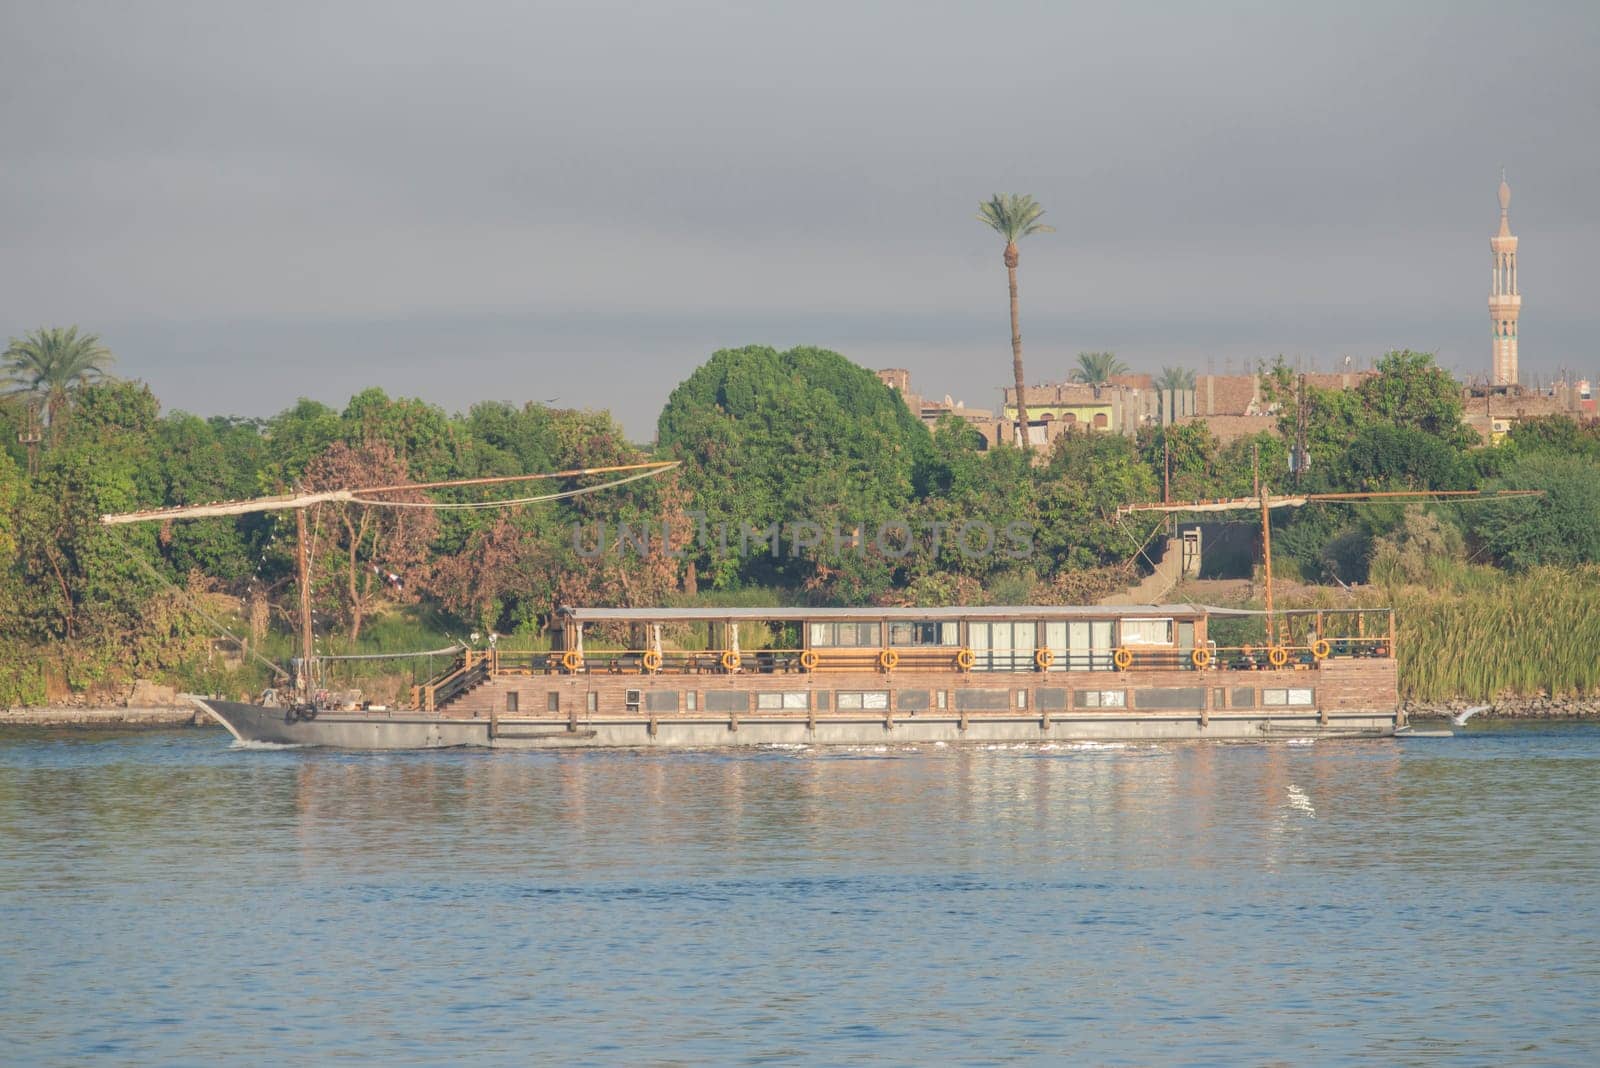 Large luxury traditional Egyptian dahabeya river cruise boat sailing on the Nile